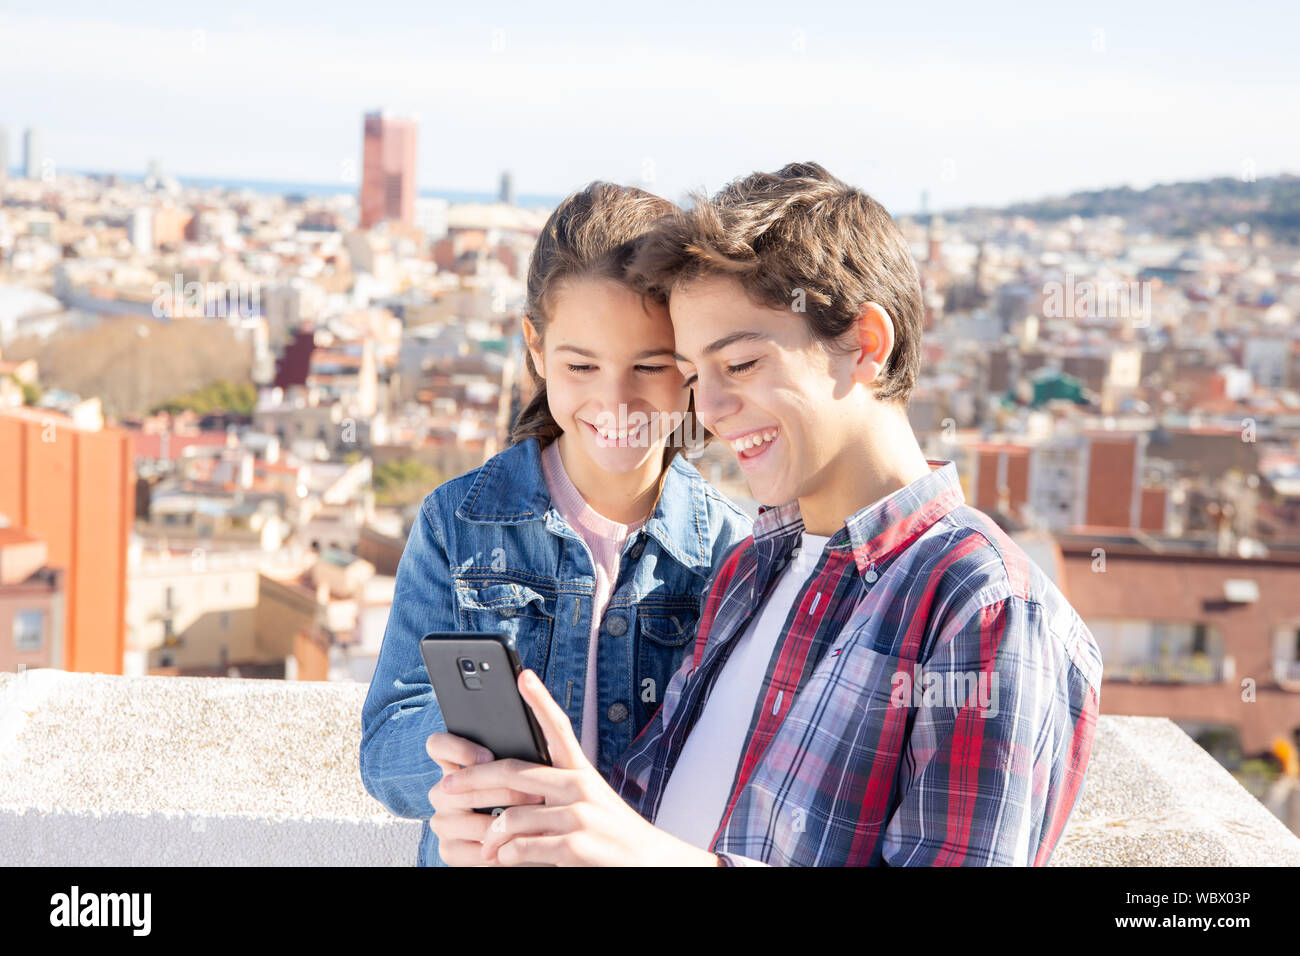 Dos niños sonrientes mirando el móvil en una terraza en el exterior Stock Photo